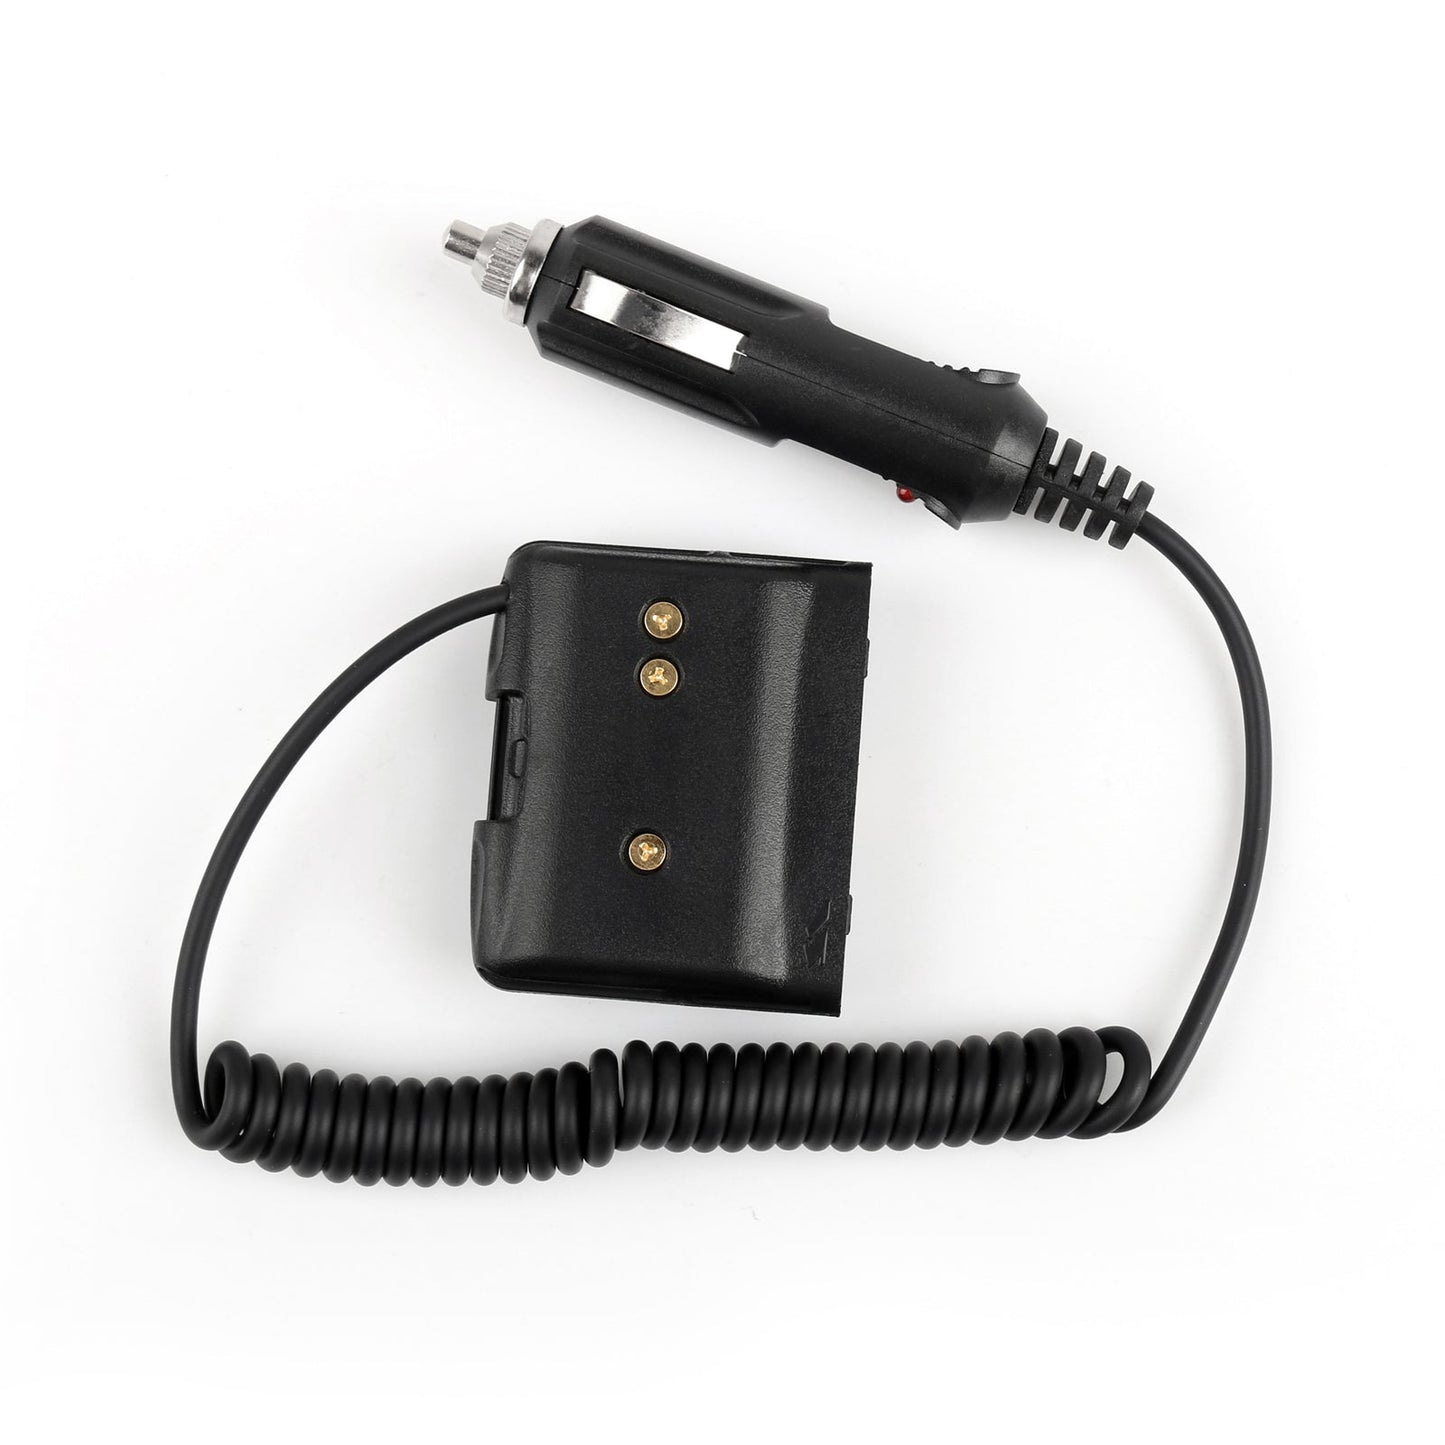 1x Car Charger Battery Eliminator Adapter For Yaesu VX-7R VX-6R VX-5R Radio